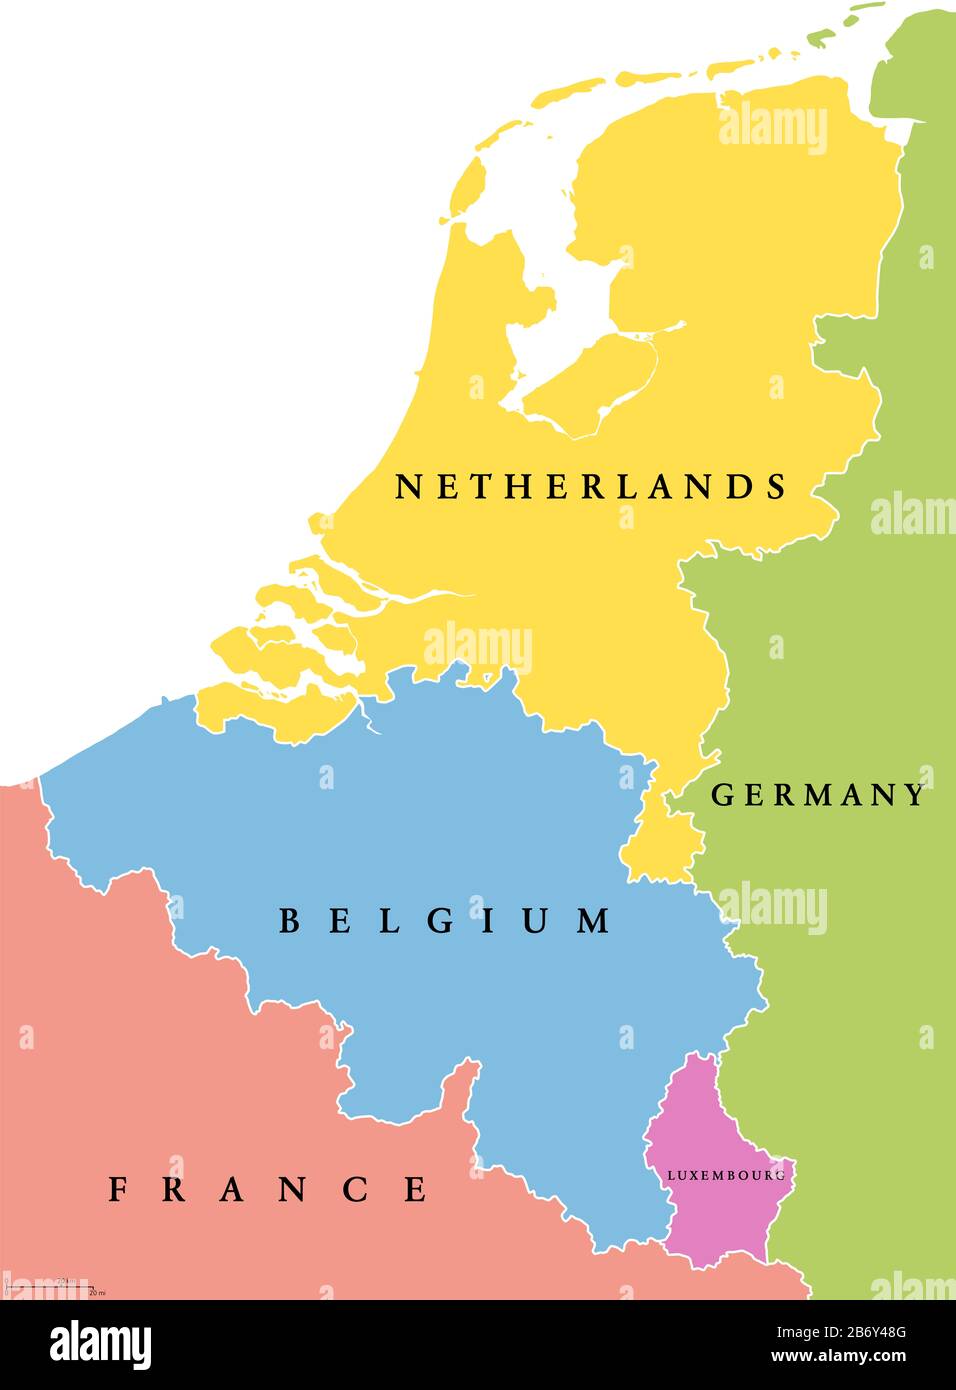 Mapa político de los estados únicos del país del territorio del territorio del Región formada por los países Bélgica, países Bajos y Luxemburgo. Foto de stock